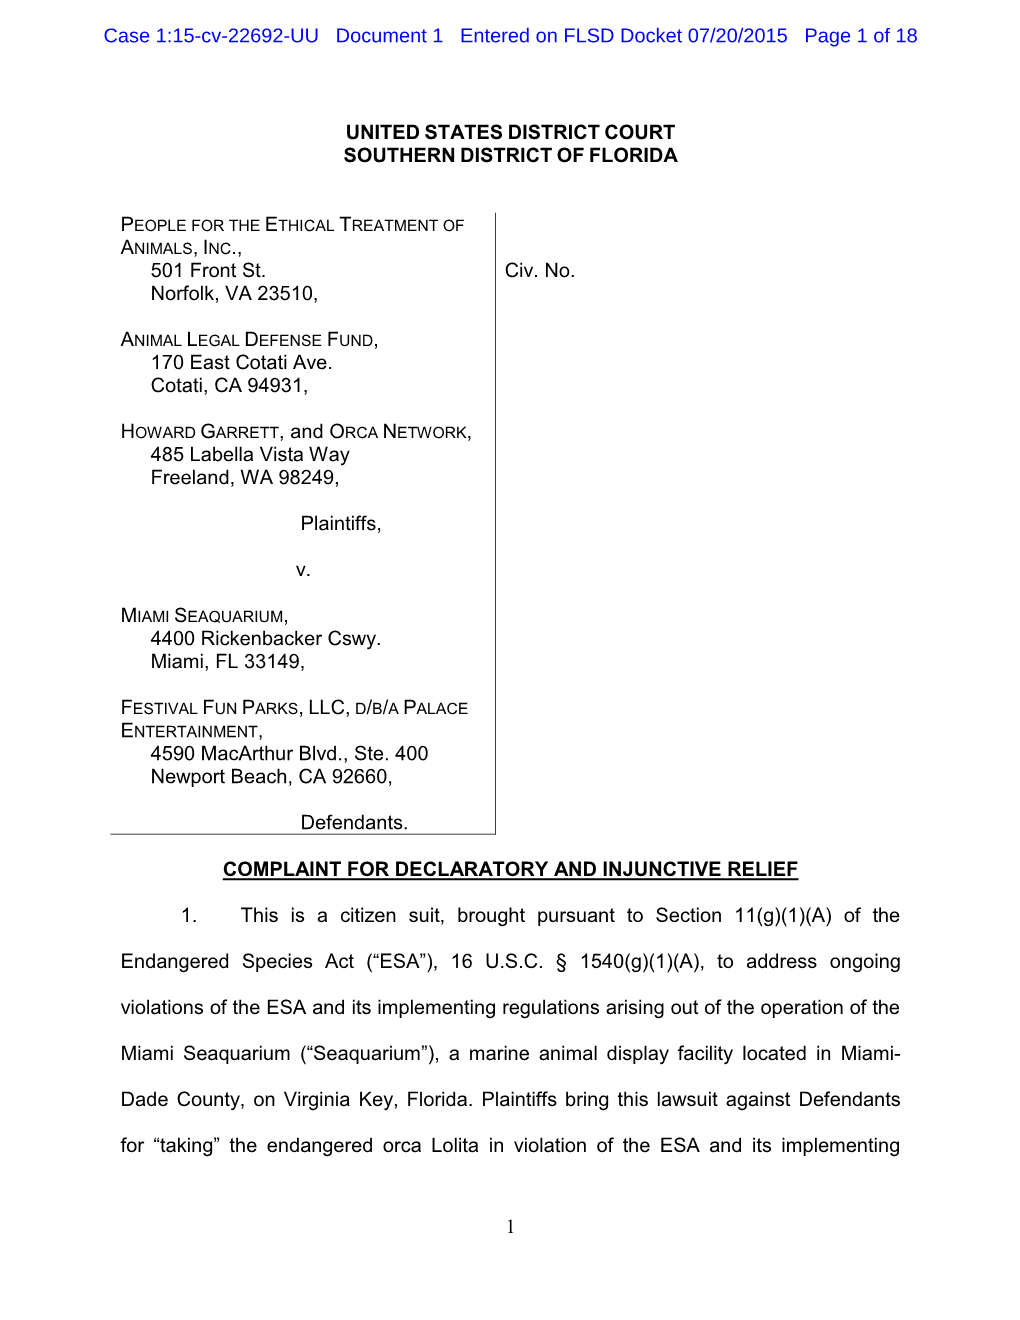 Case 1:15-Cv-22692-UU Document 1 Entered on FLSD Docket 07/20/2015 Page 1 of 18